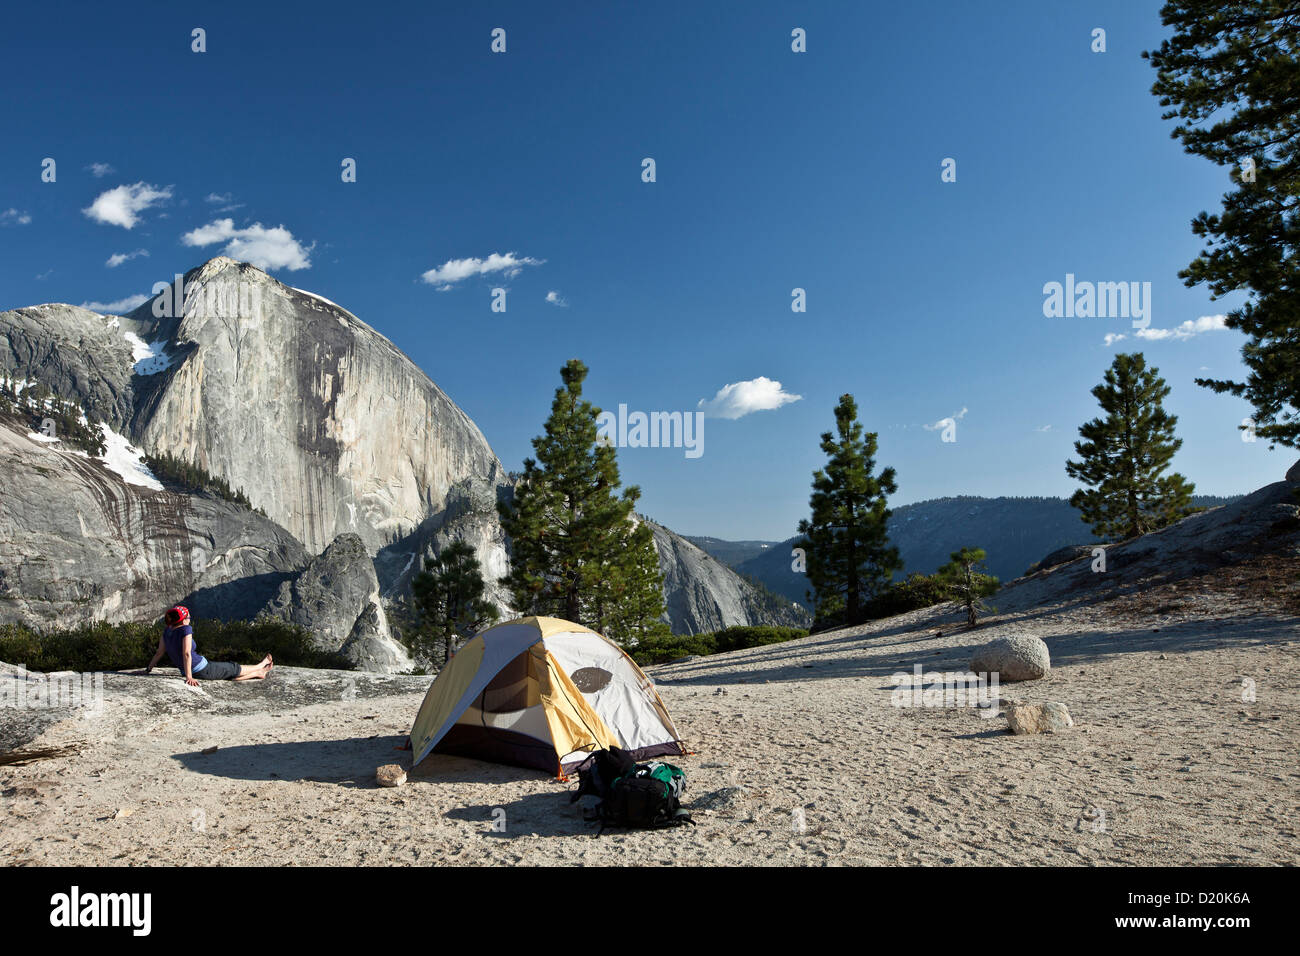 Demi Dôme mountain et tente dans la lumière du soleil, Yosemite National Park, California, USA, Amérique Latine Banque D'Images